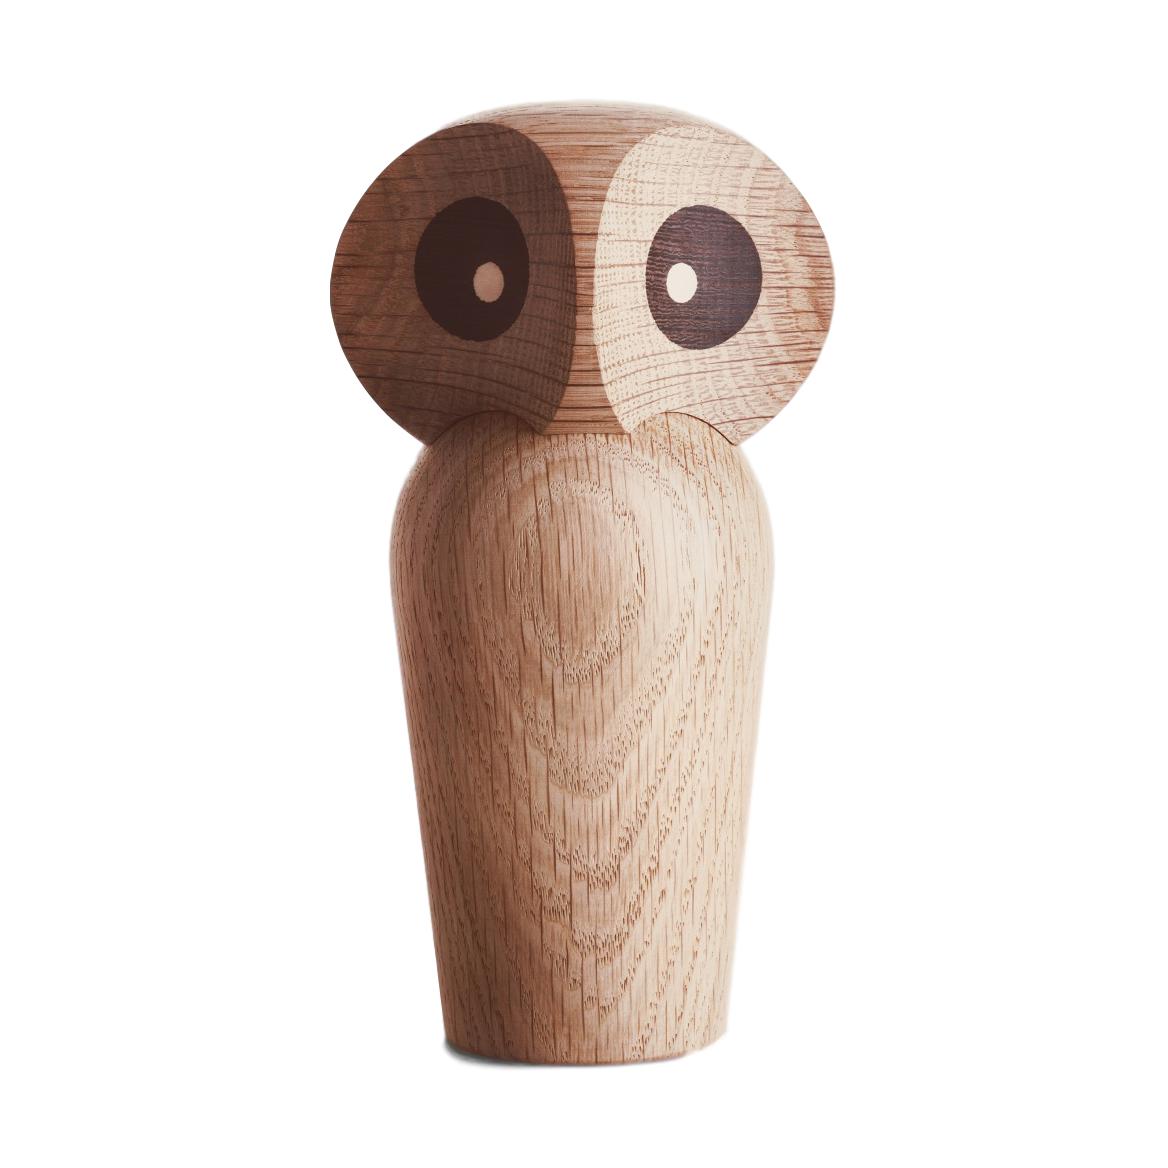 Architectmade Paul Anker Hansen Owl Mini - Ny, f.eks